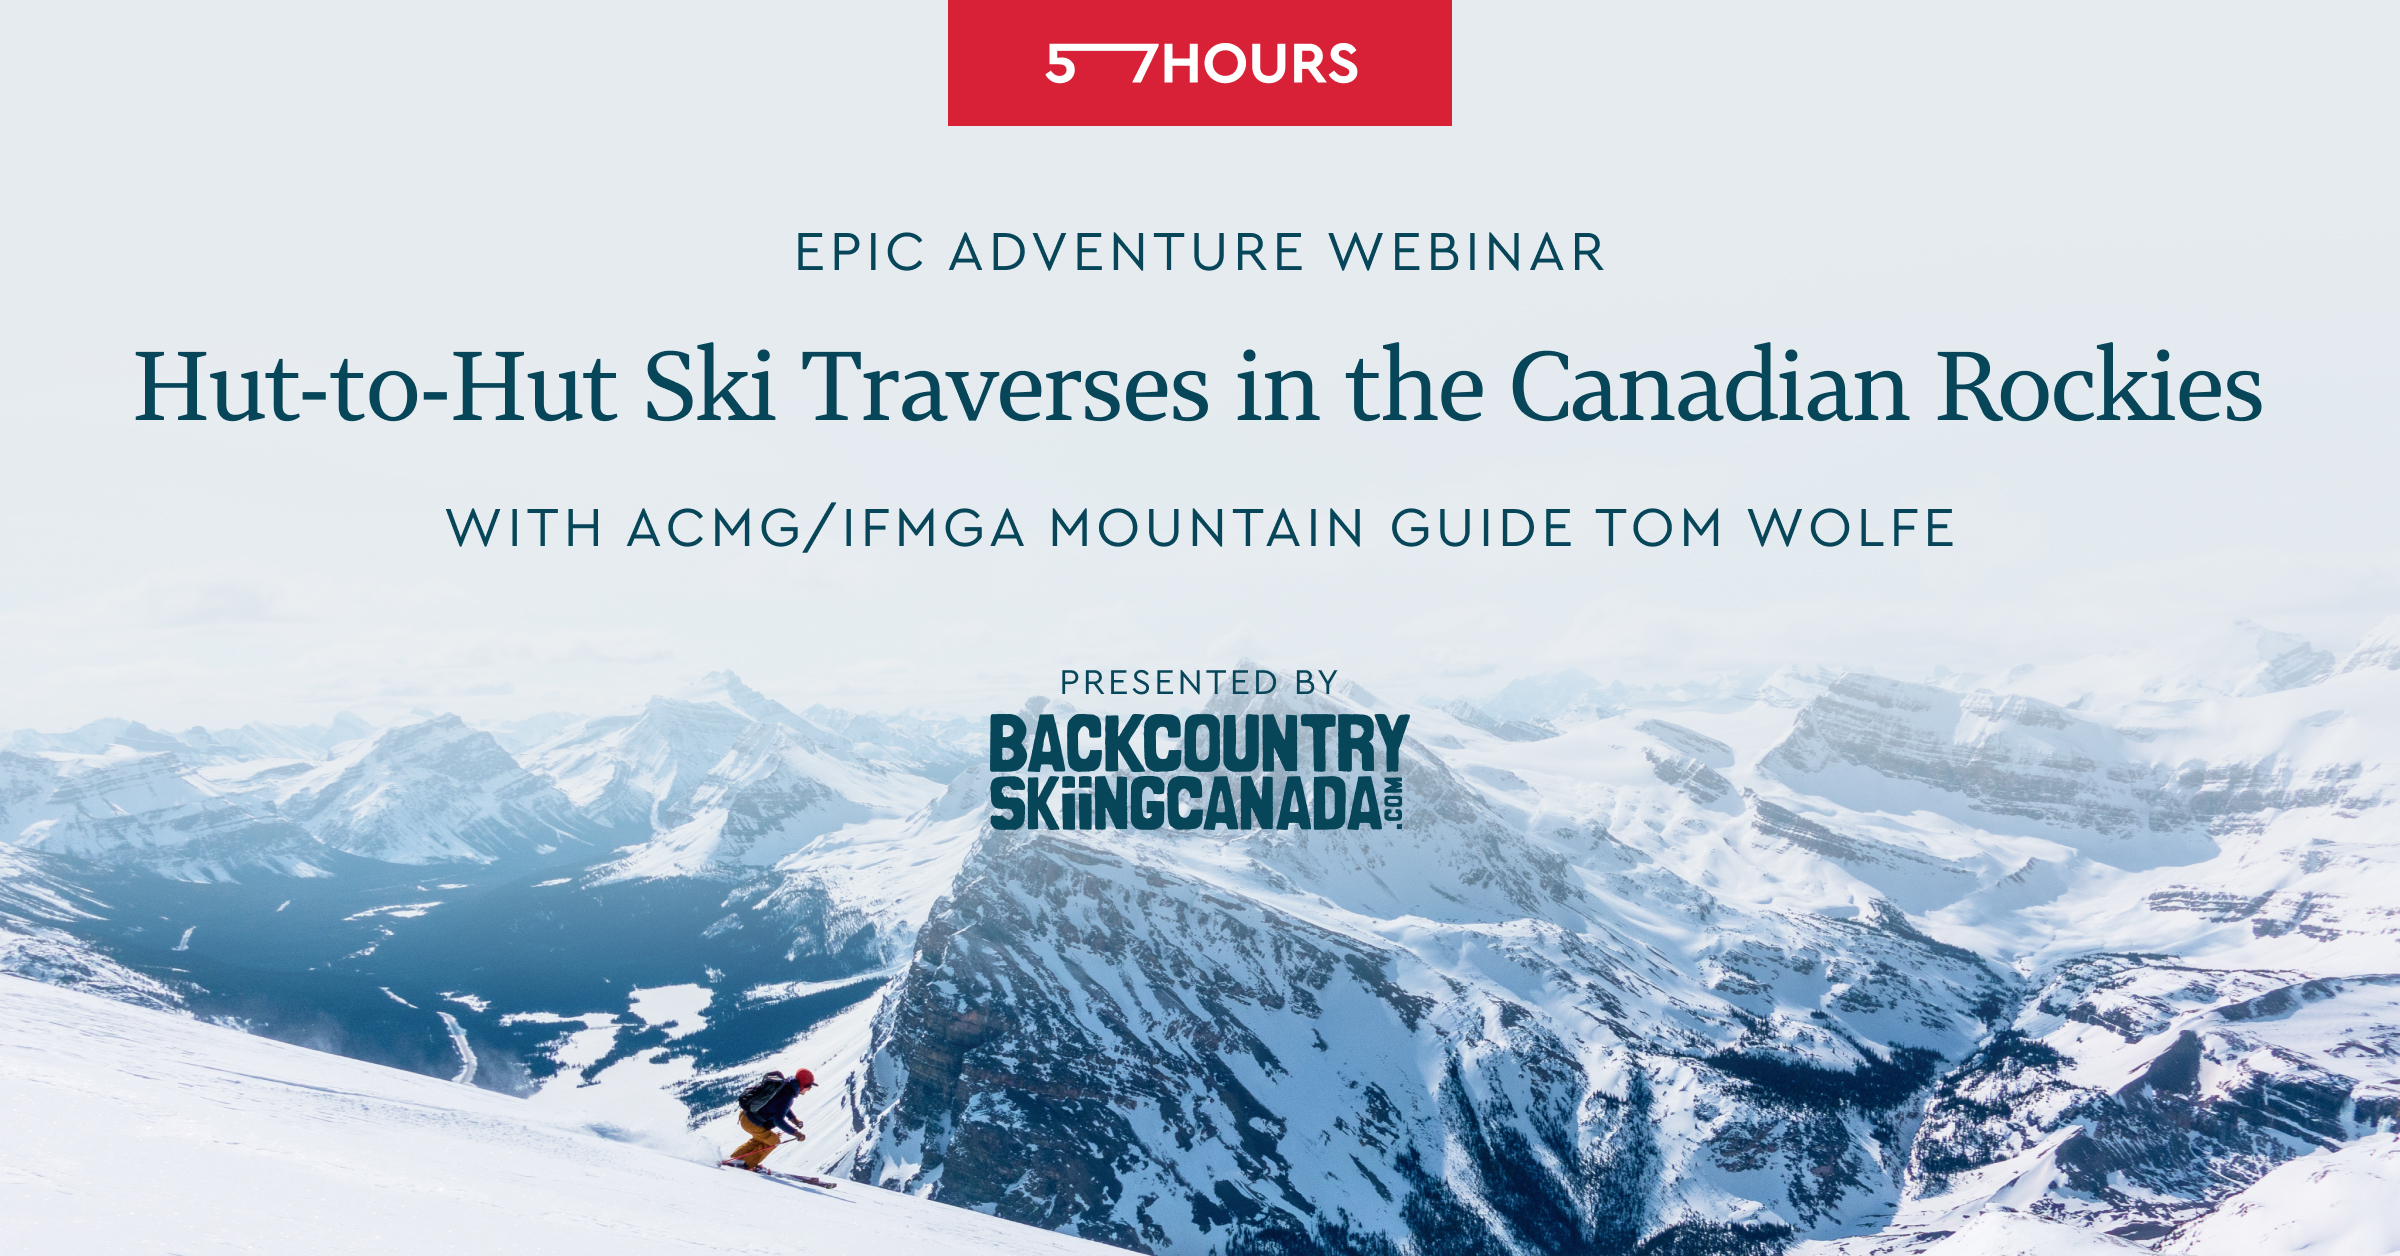 Hut-to-hut Ski Traverses in the Canadian Rockies - Free Webinar